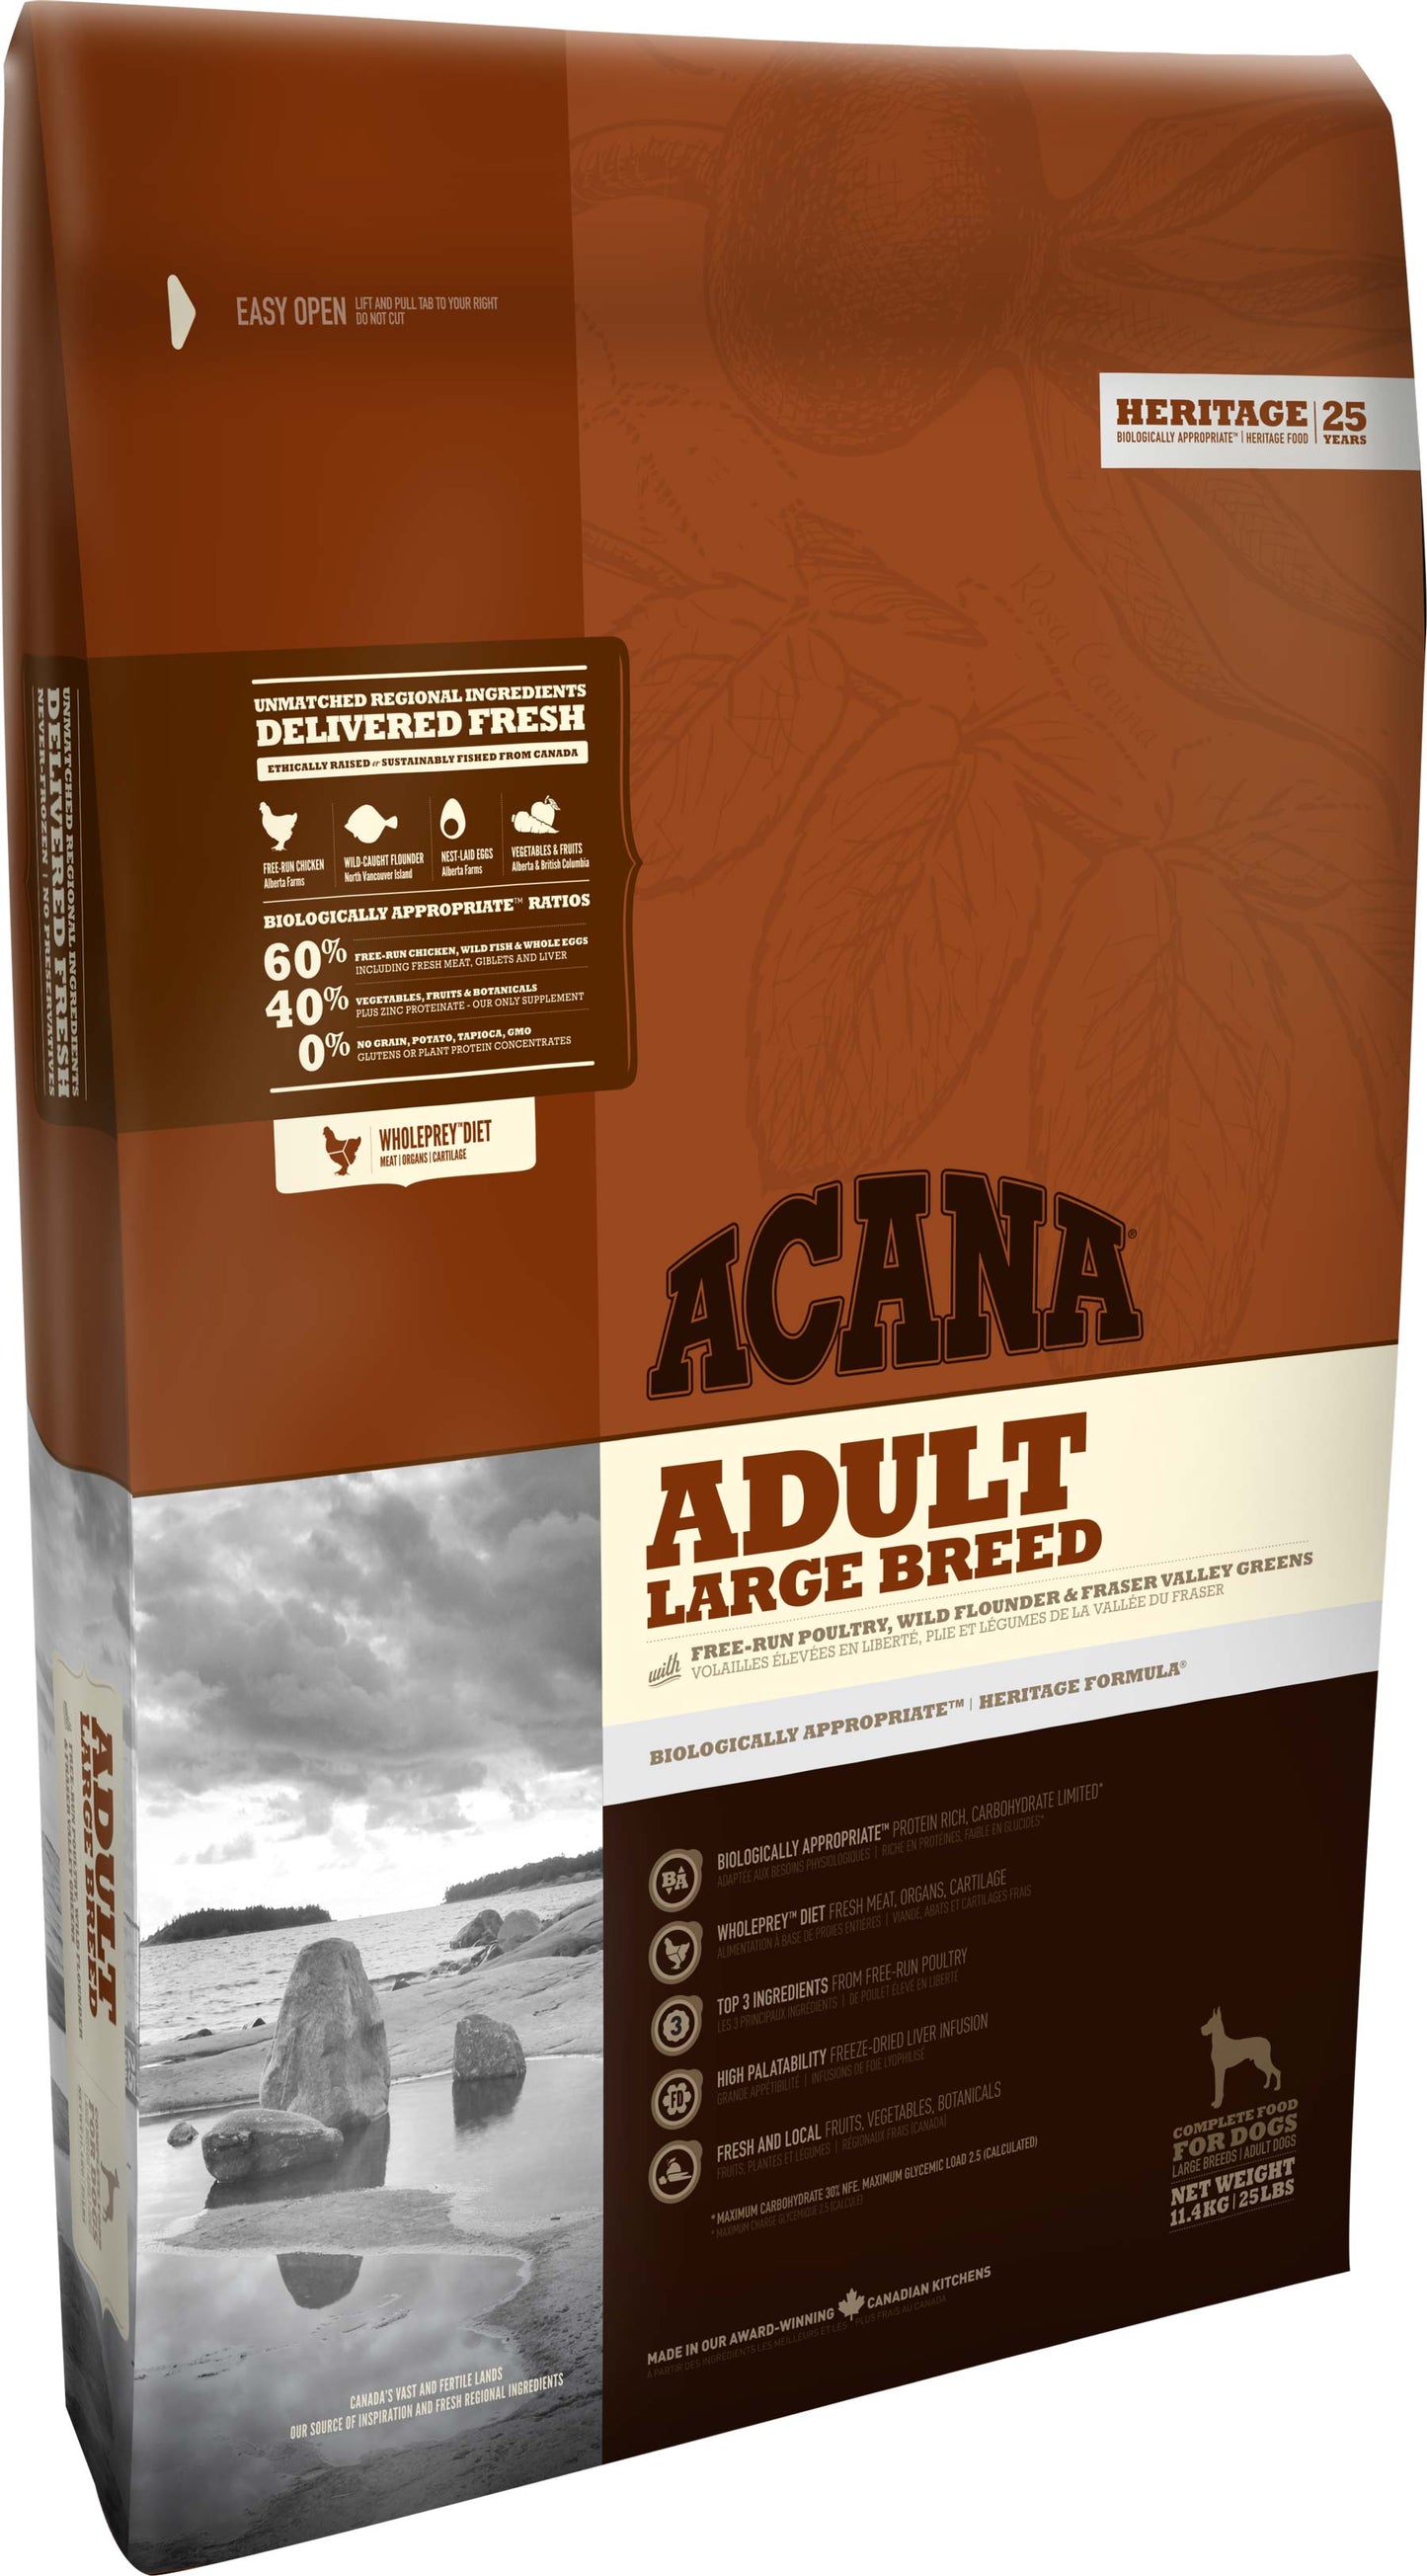 Acana Dog - Heritage - ADULT LARGE BREED